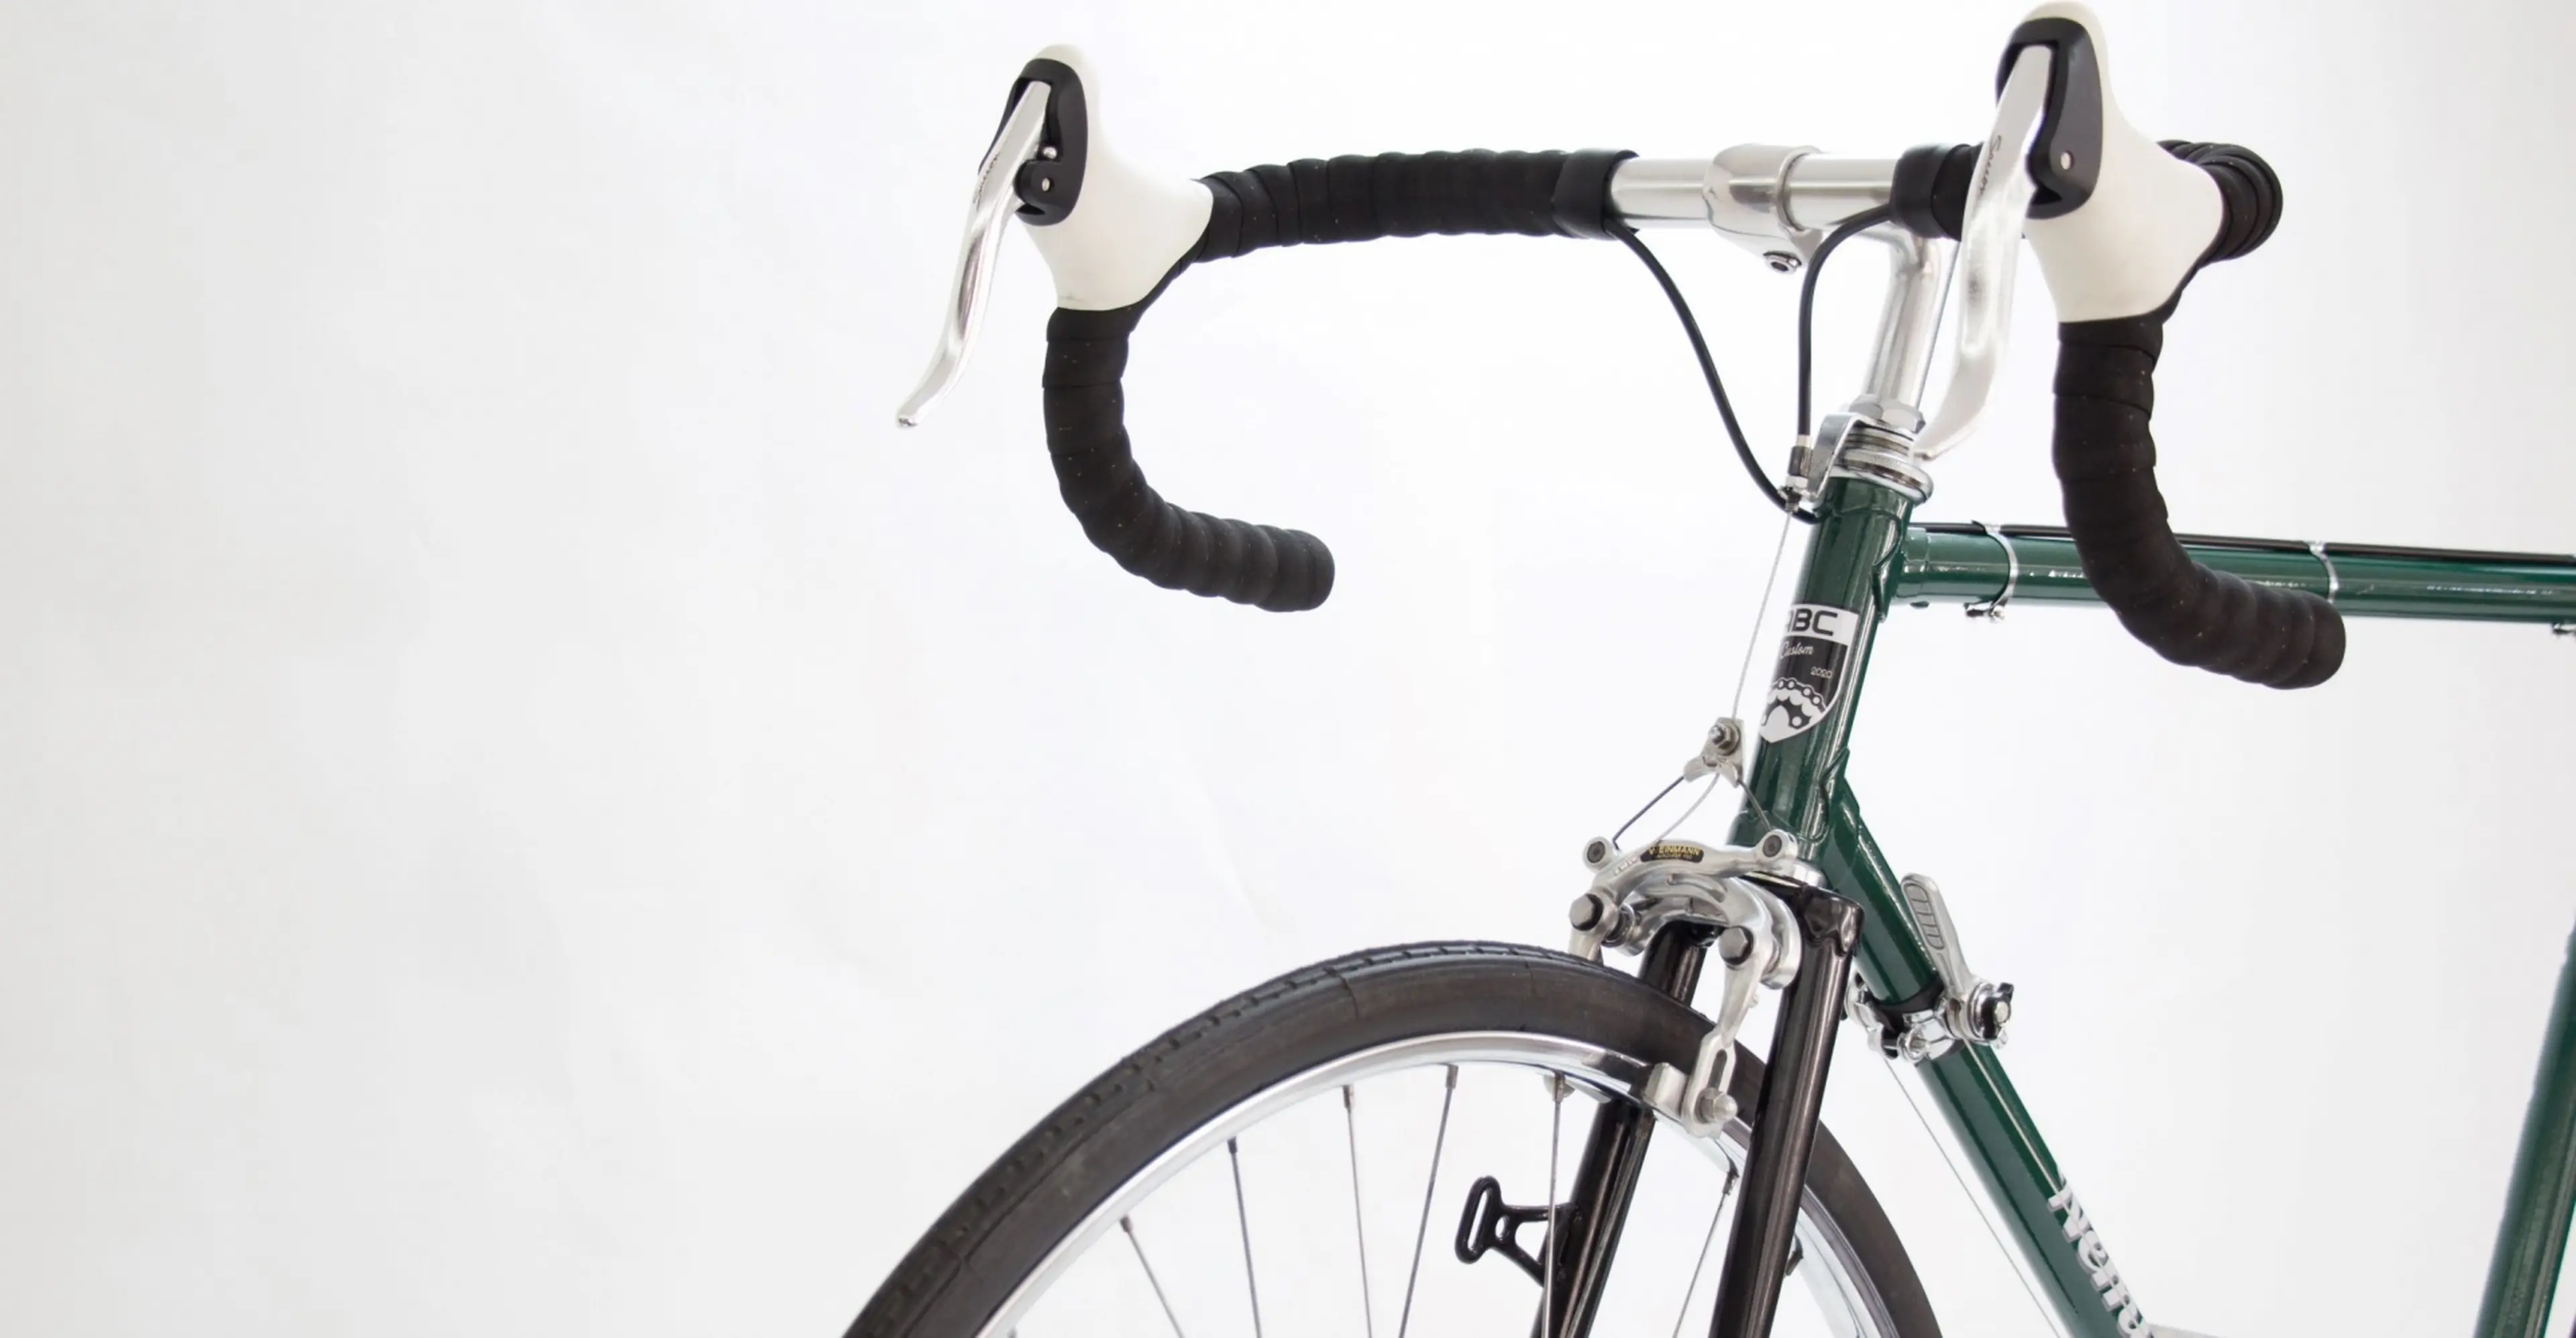 9. Bicicletă semicursieră vintage recondiționată